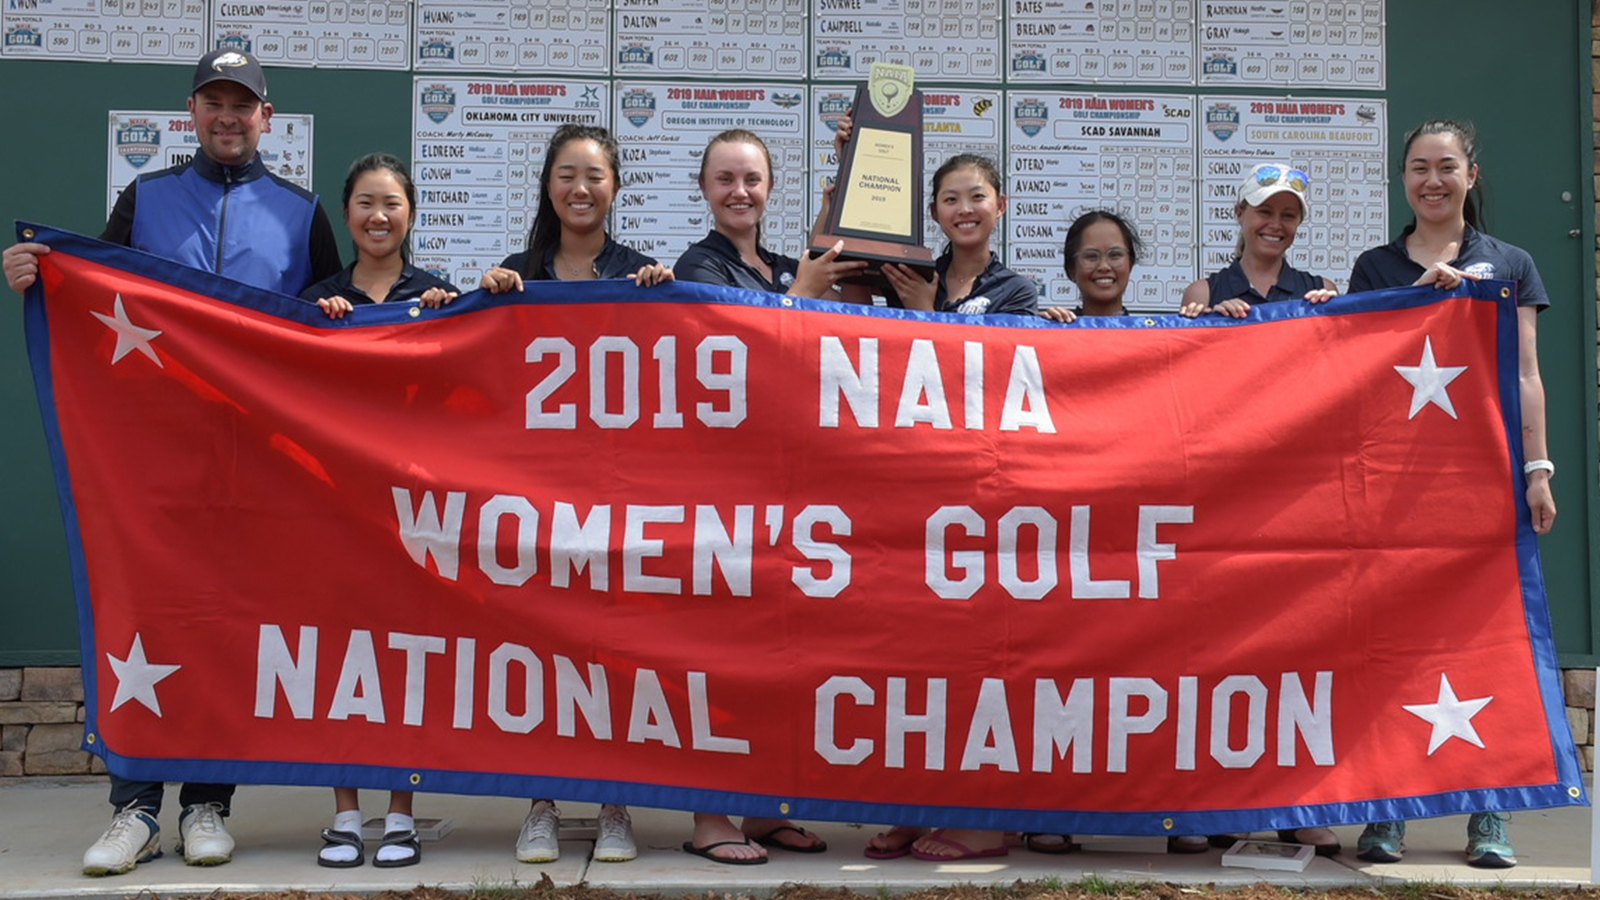 2019 NAIA Women's Golf Coaches' Top 25 Poll Preseason